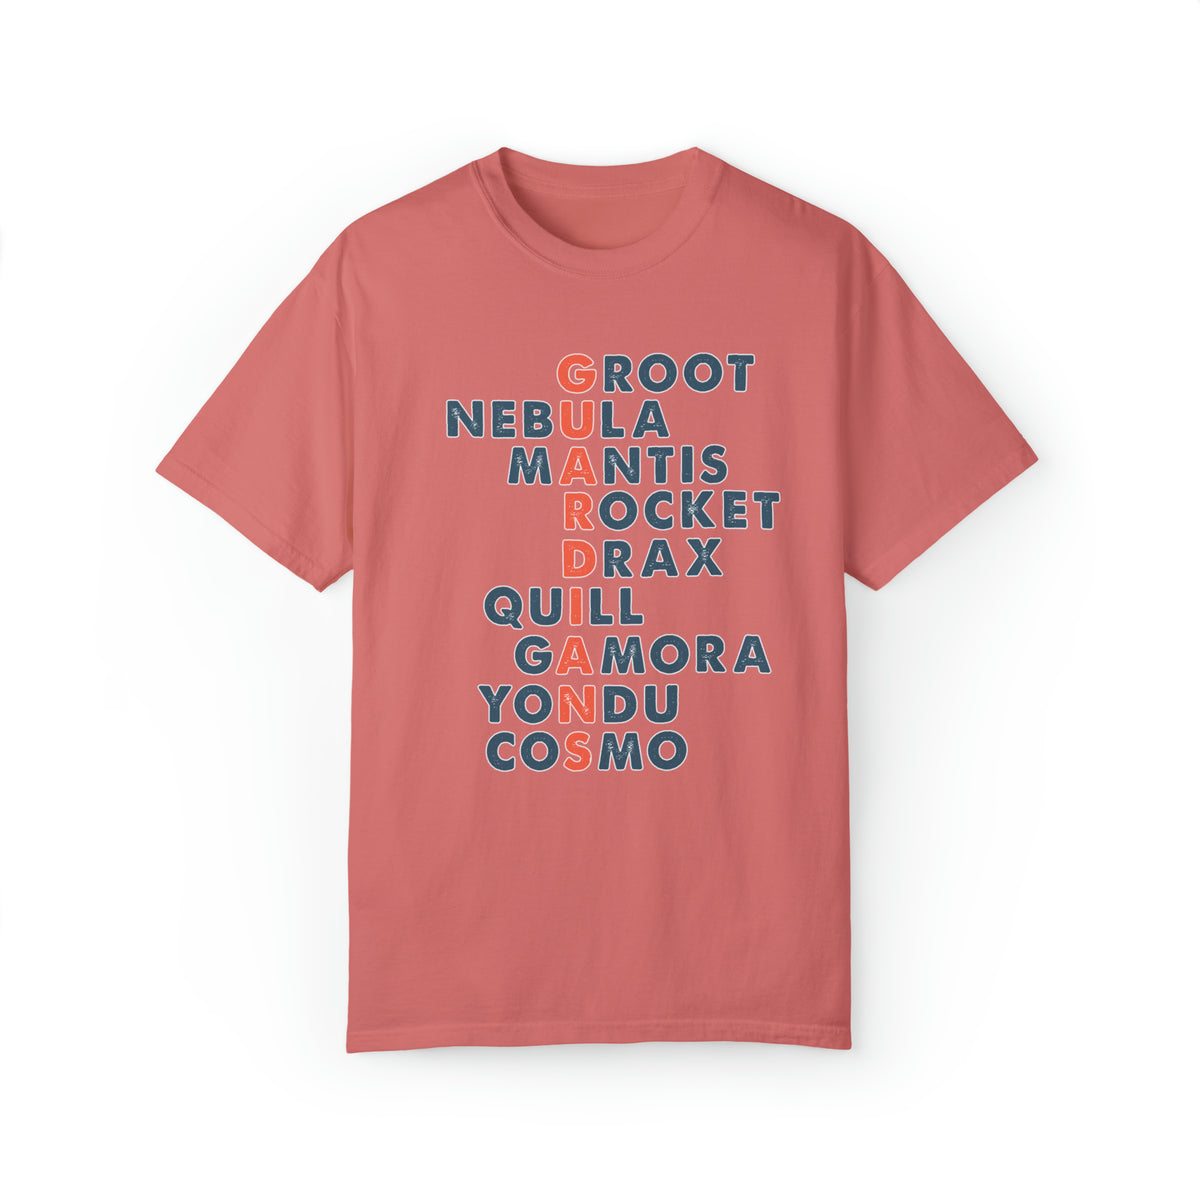 Guardians Comfort Colors Unisex Garment-Dyed T-shirt